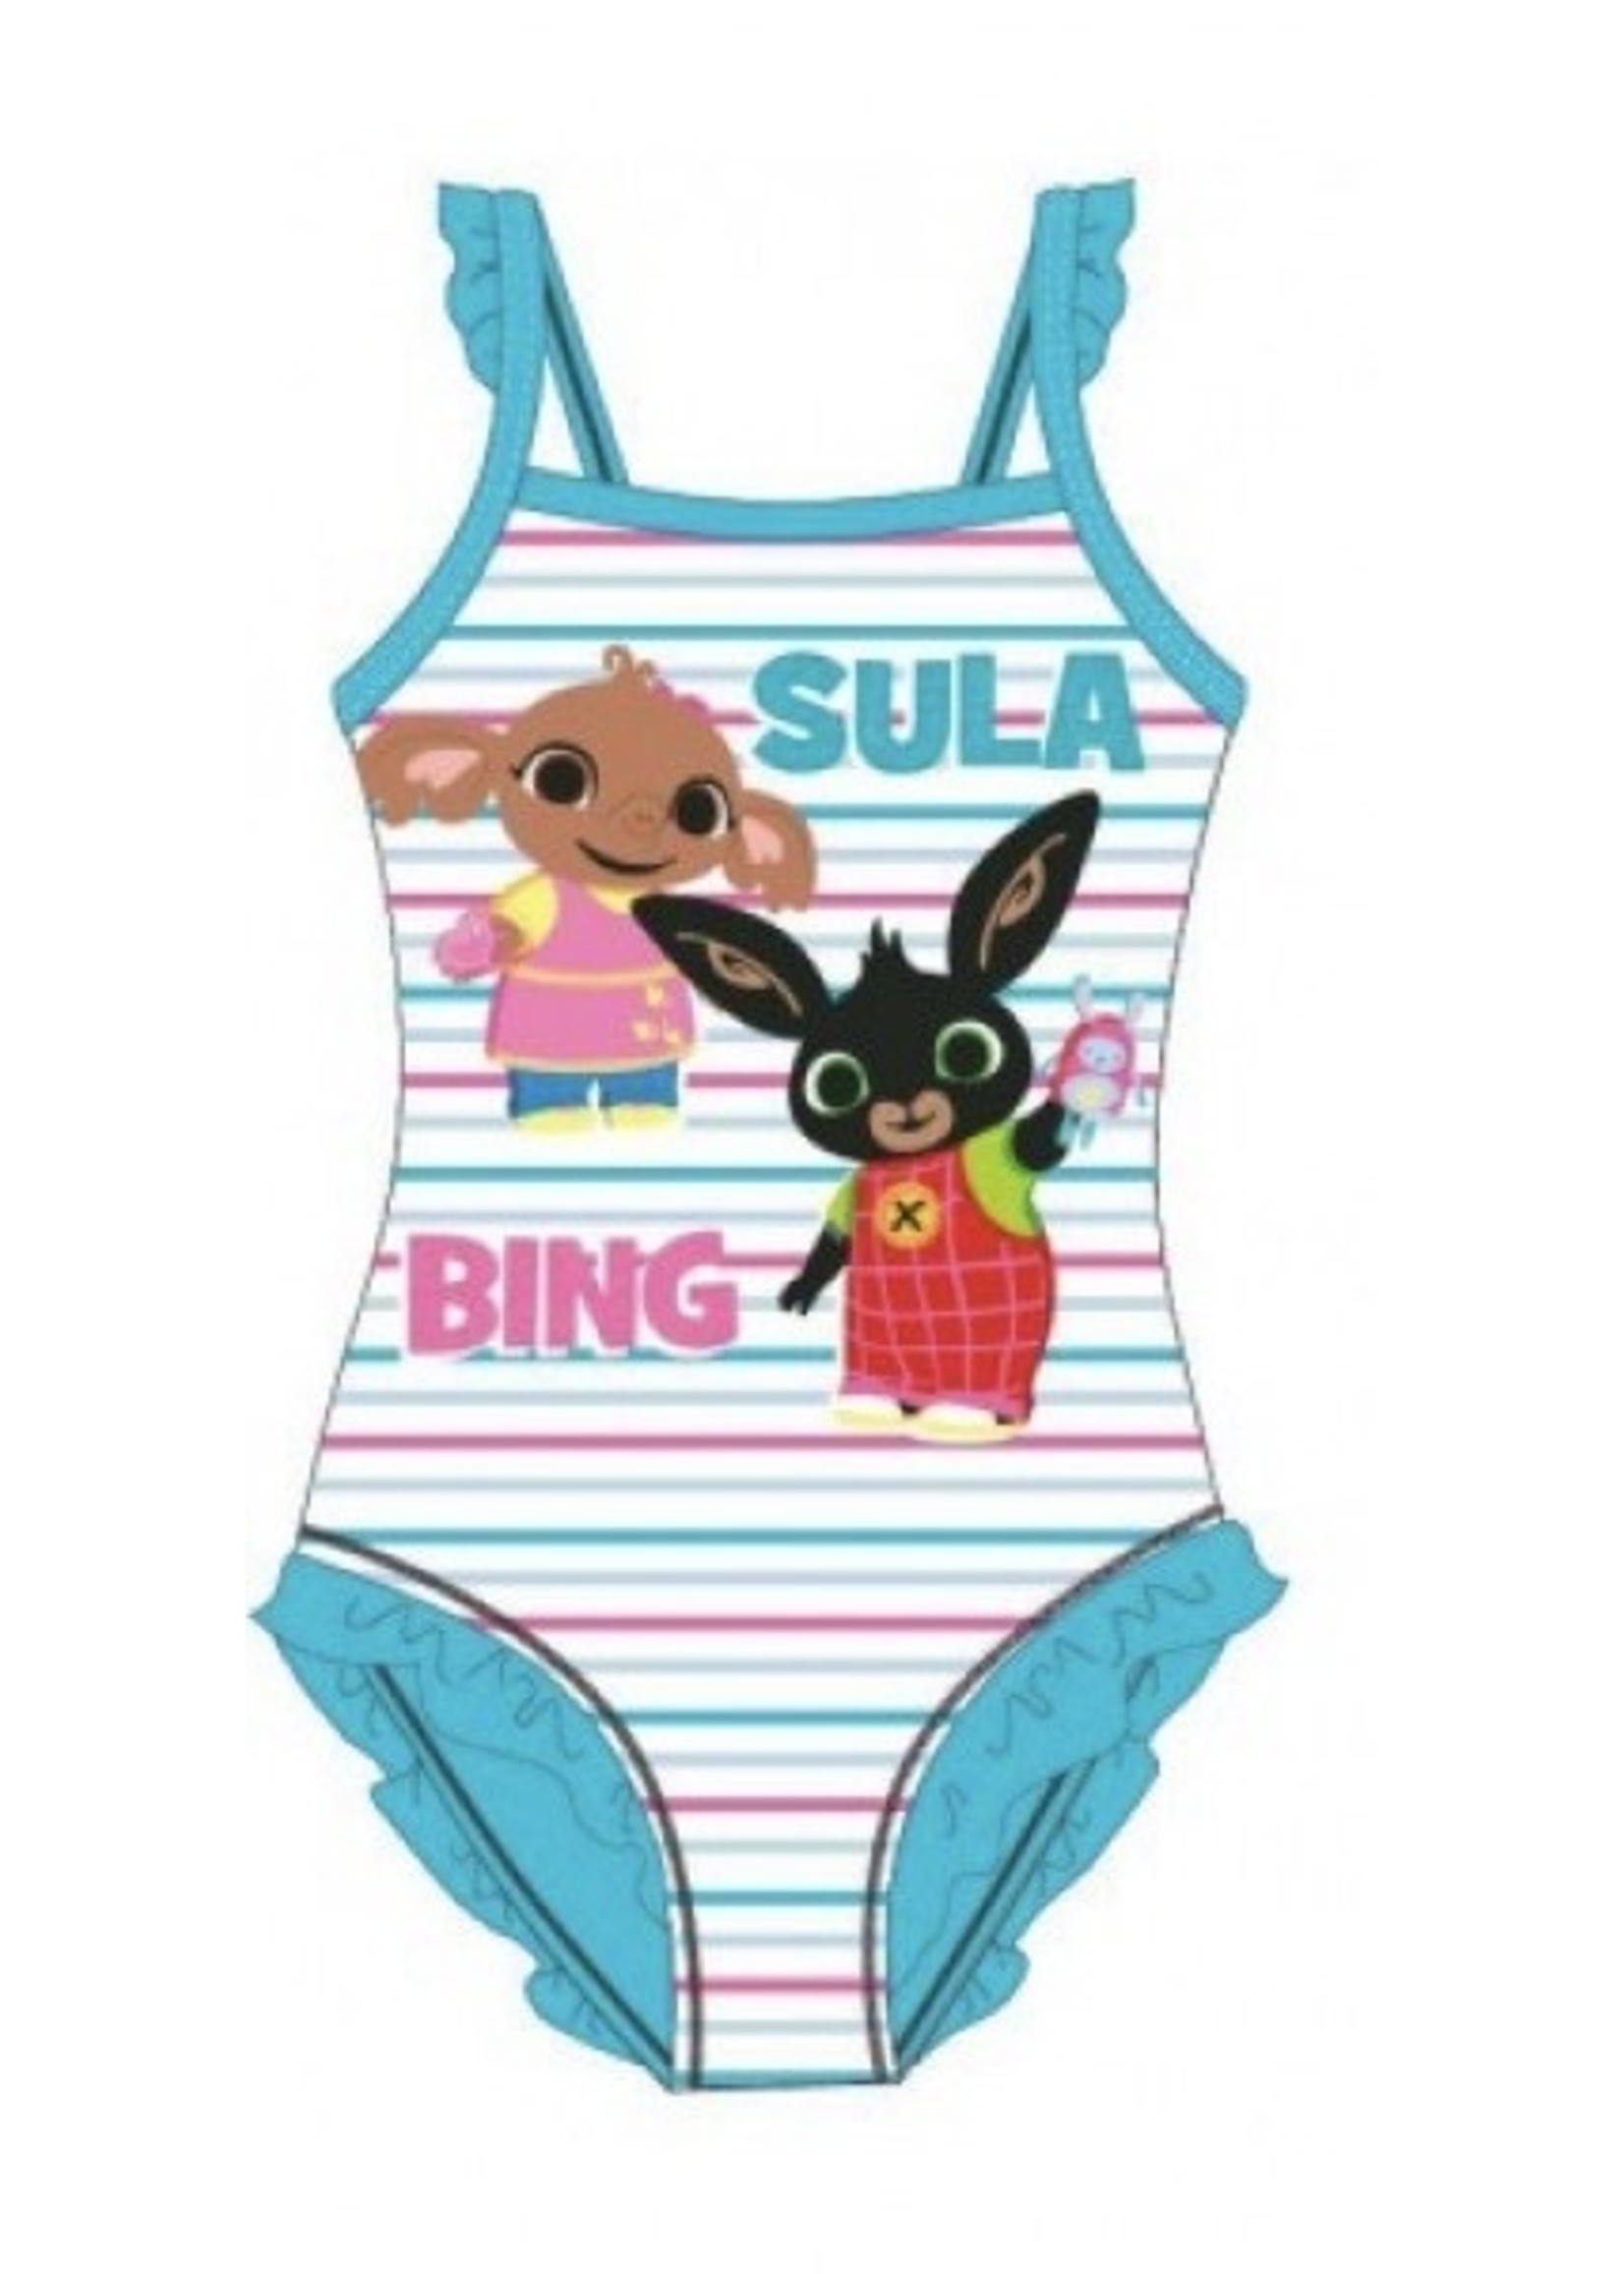 Bing Bunny Bing swimsuit mint green